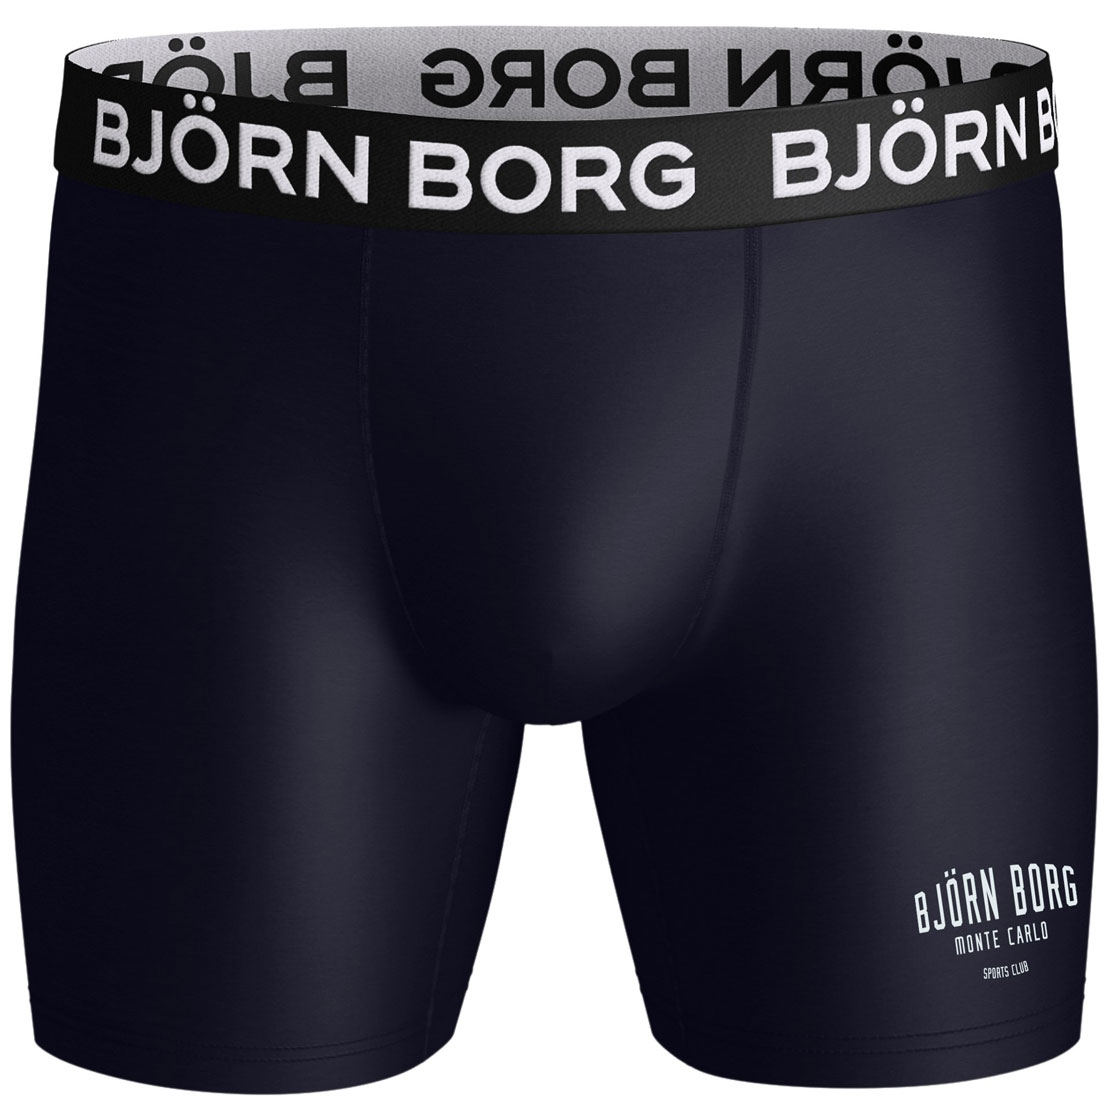 10001729-mp003-Bjorn-Borg-voor